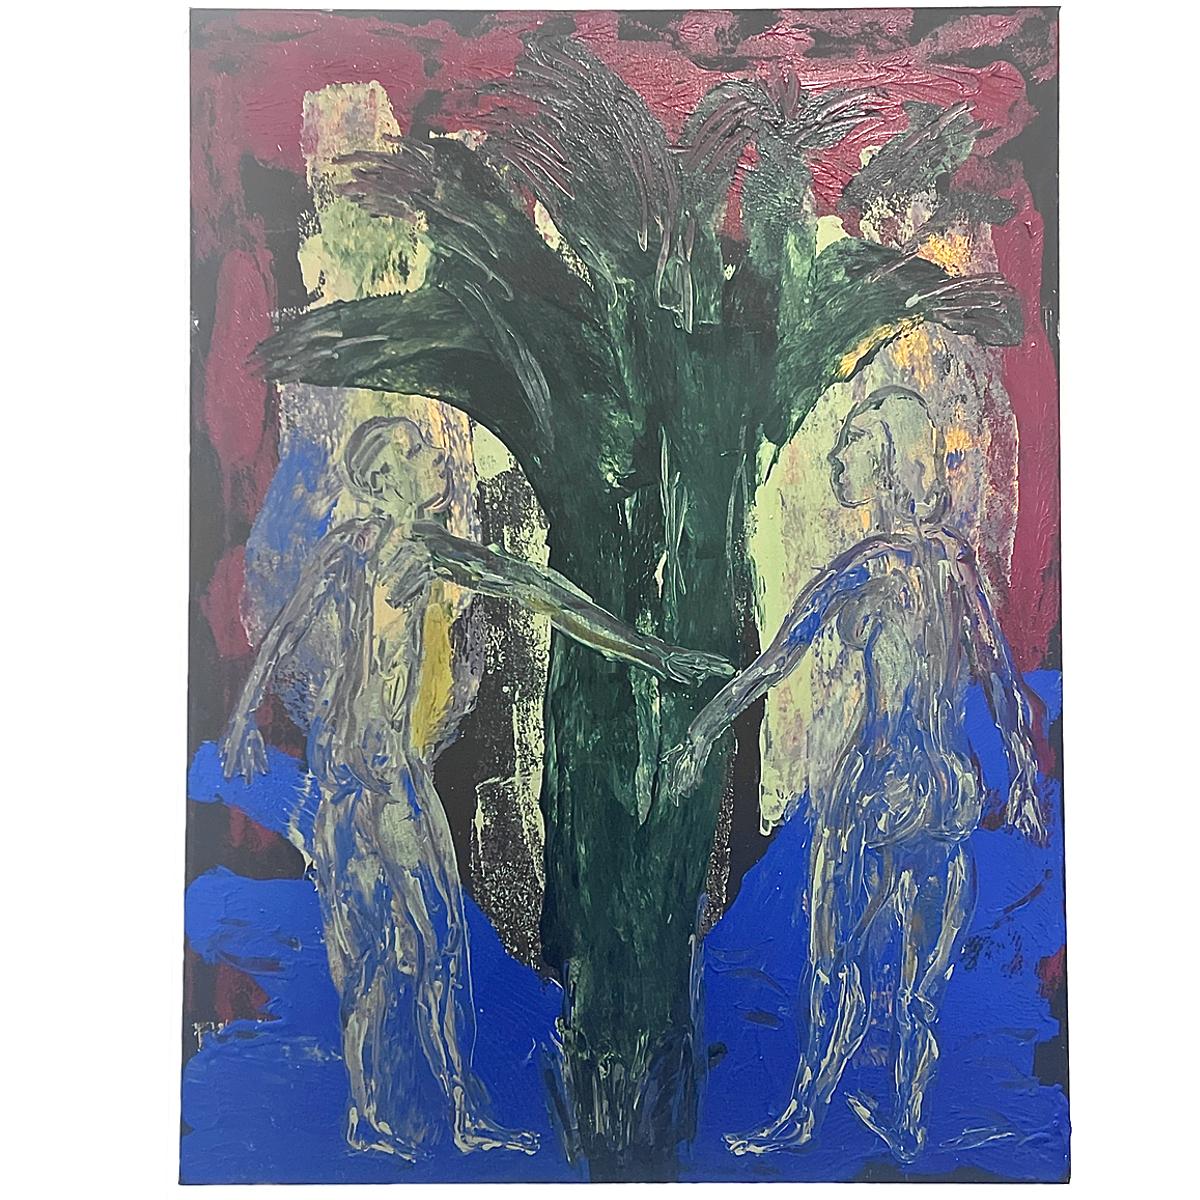 Peinture à grande échelle de Steve Balkin intitulée "Entre Nous". Balkin est connu pour être le créateur de l'"impression lyrique", qui est clairement exposée et définie dans cet exemple. Il est également connu pour ses relations avec Andy Warhol et